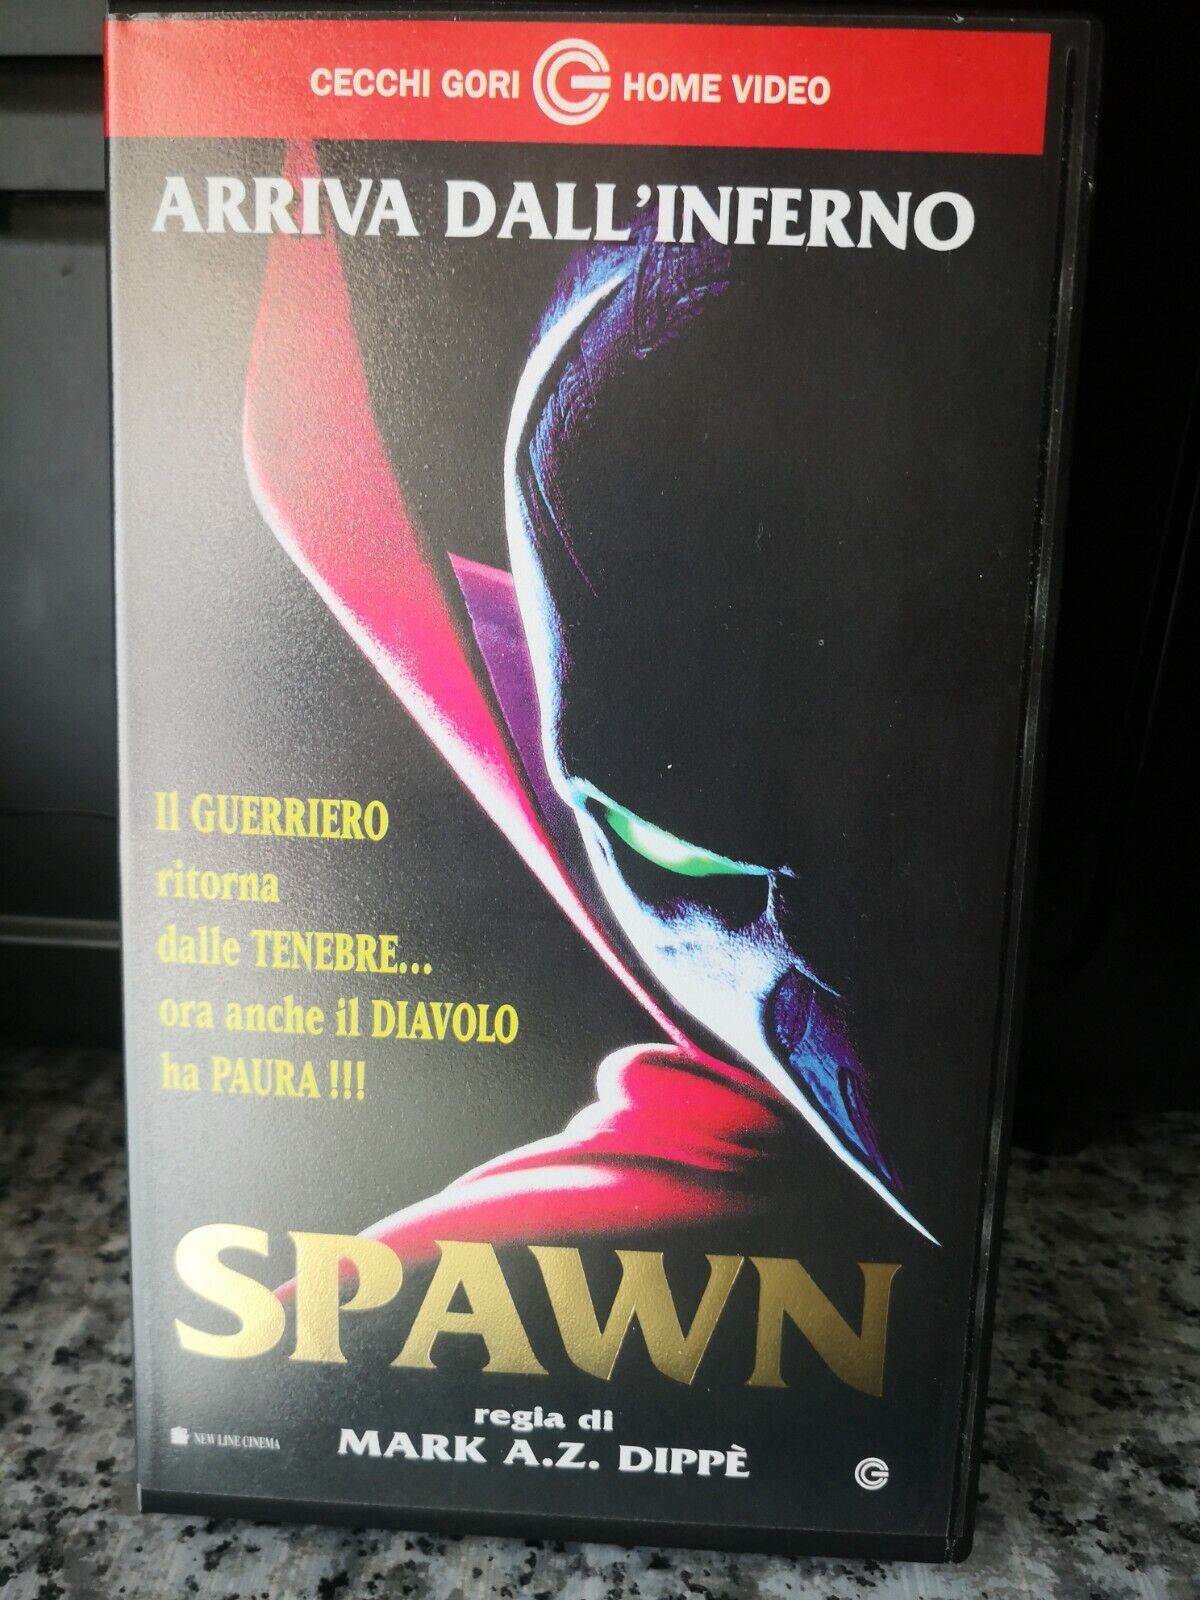 Spawn - vhs -1998 - Cecchi Gori Home Video - F